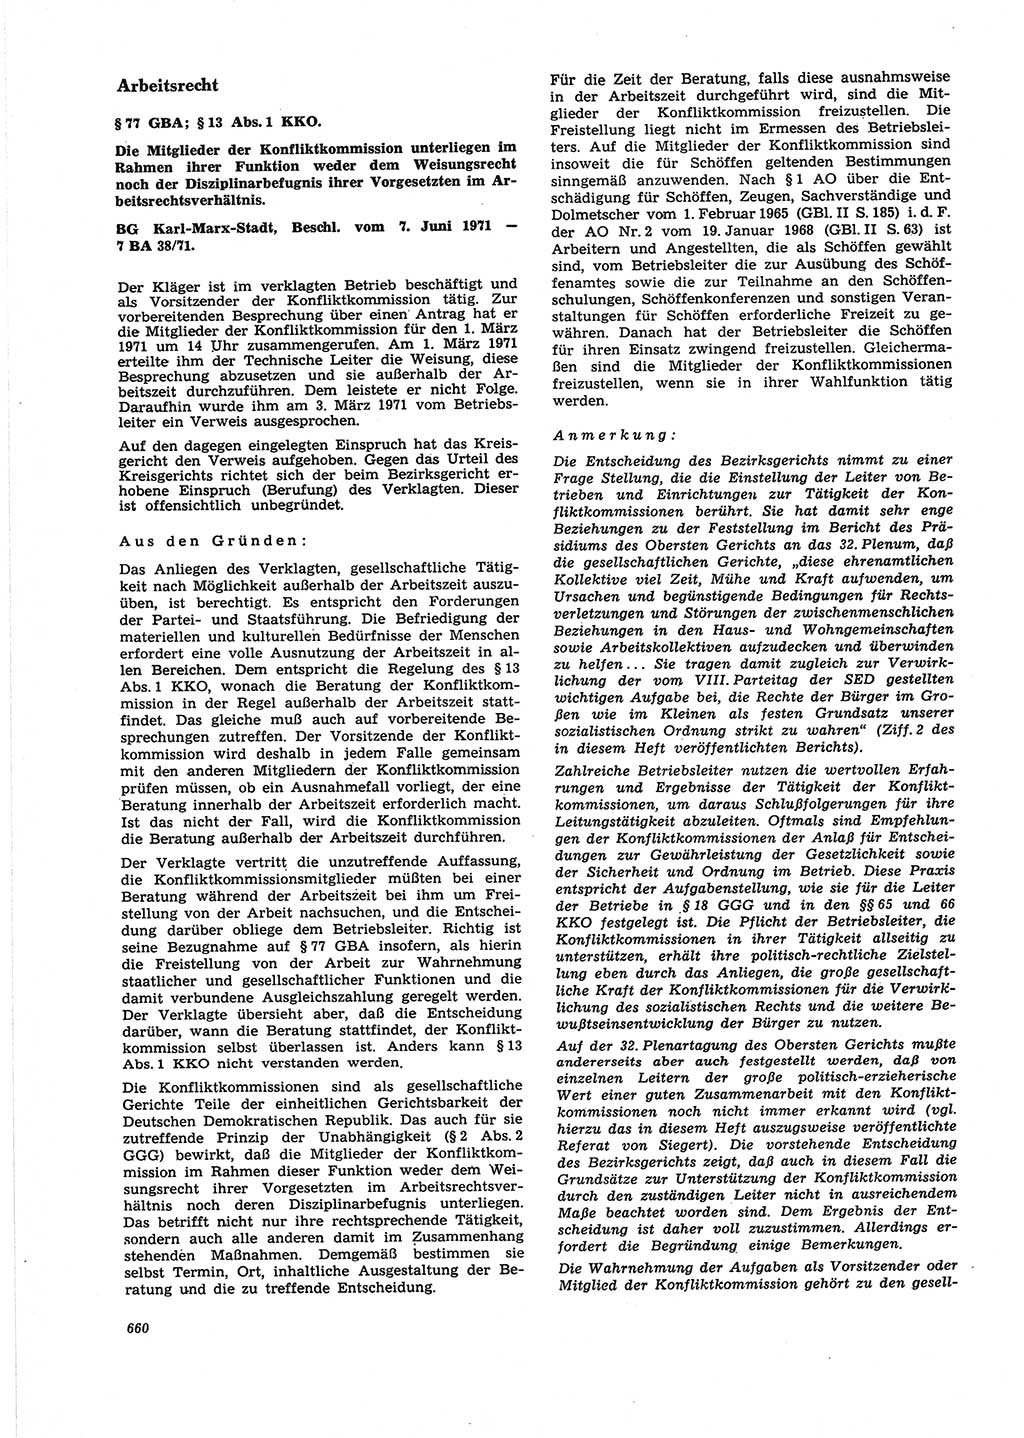 Neue Justiz (NJ), Zeitschrift für Recht und Rechtswissenschaft [Deutsche Demokratische Republik (DDR)], 25. Jahrgang 1971, Seite 660 (NJ DDR 1971, S. 660)